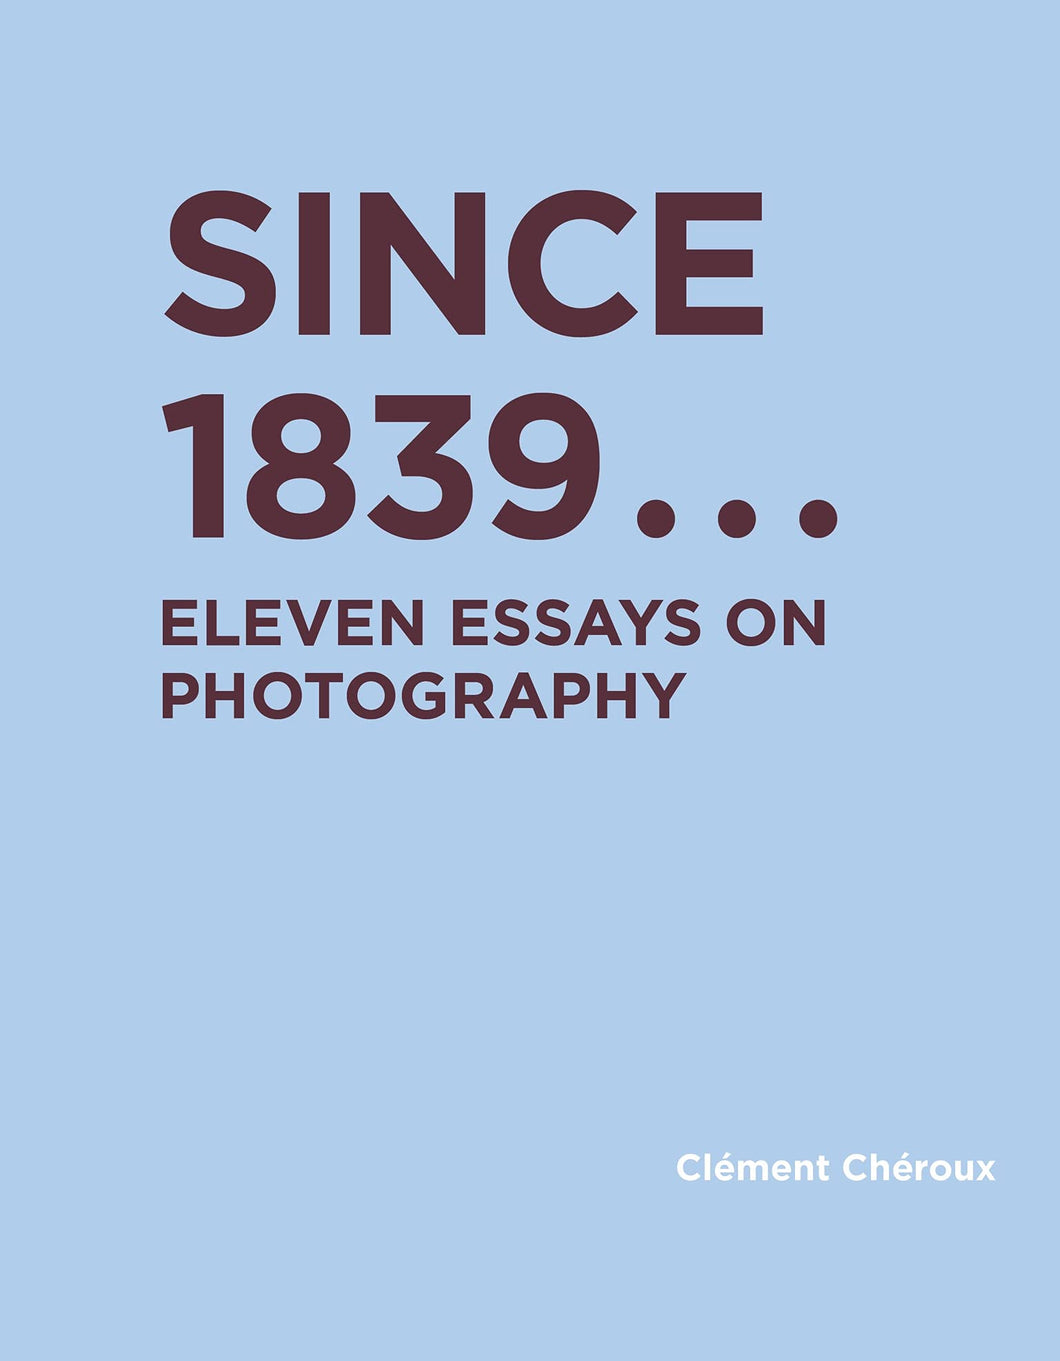 Since 1839 : Eleven Essays on Photography ร้านหนังสือและสิ่งของ เป็นร้านหนังสือภาษาอังกฤษหายาก และร้านกาแฟ หรือ บุ๊คคาเฟ่ ตั้งอยู่สุขุมวิท กรุงเทพ